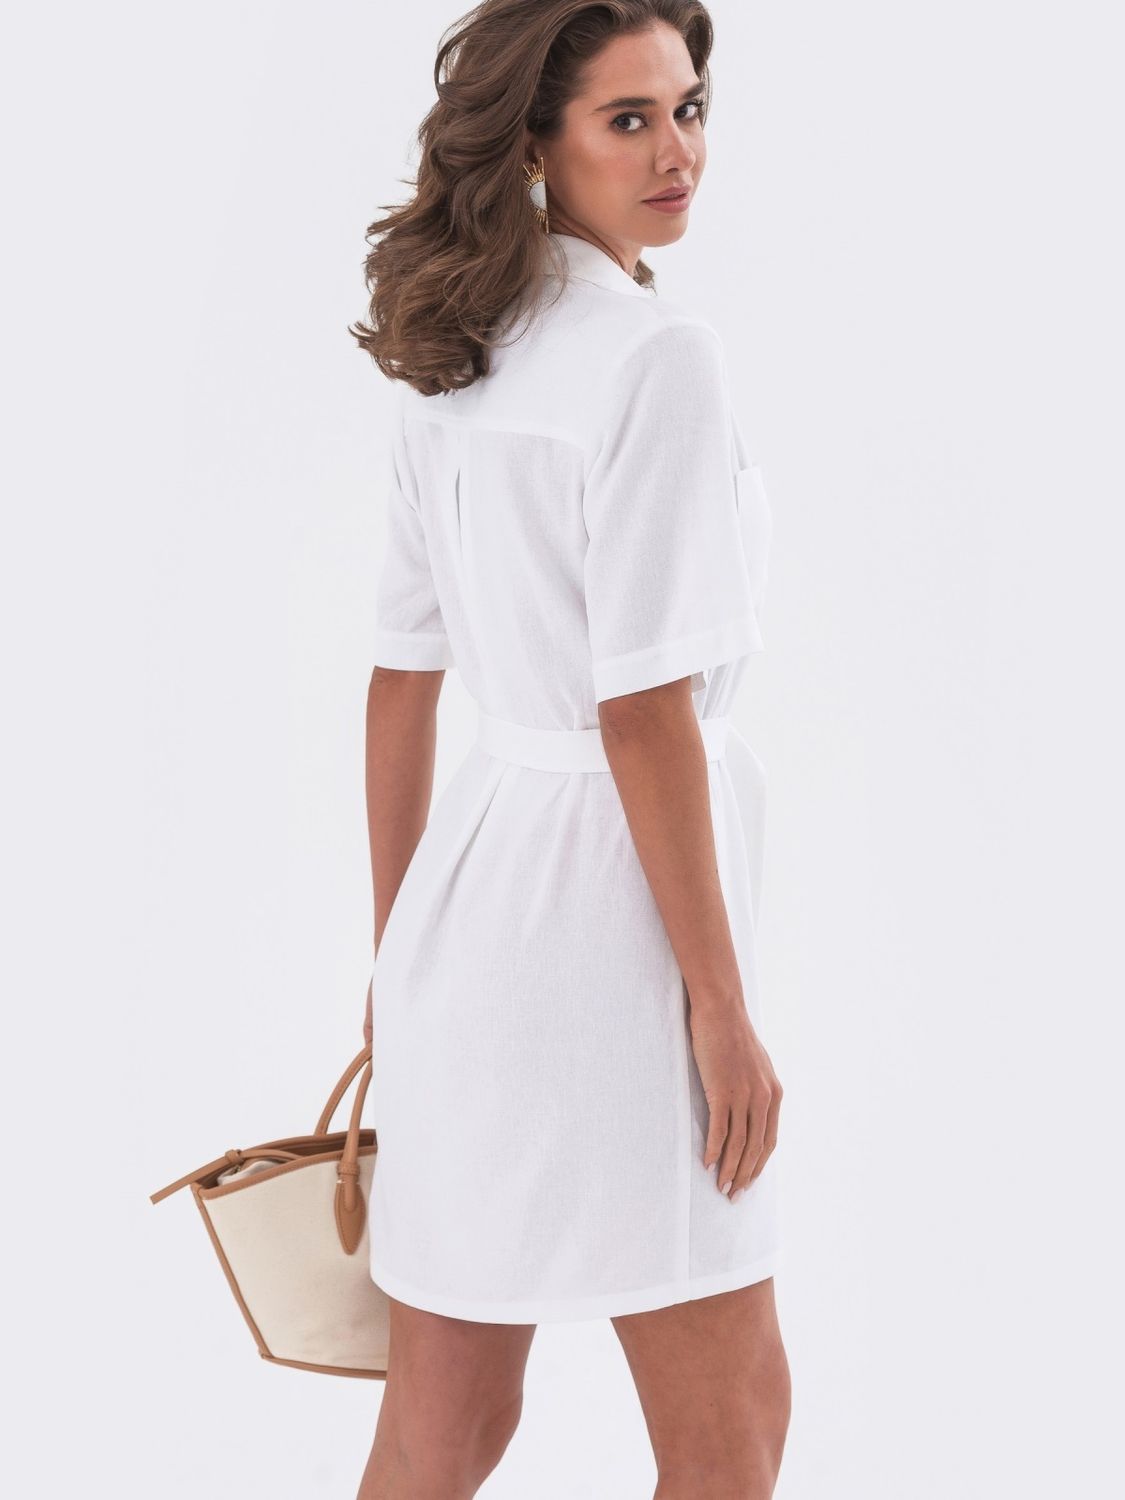 Коротке лляне плаття сорочка білого кольору - фото